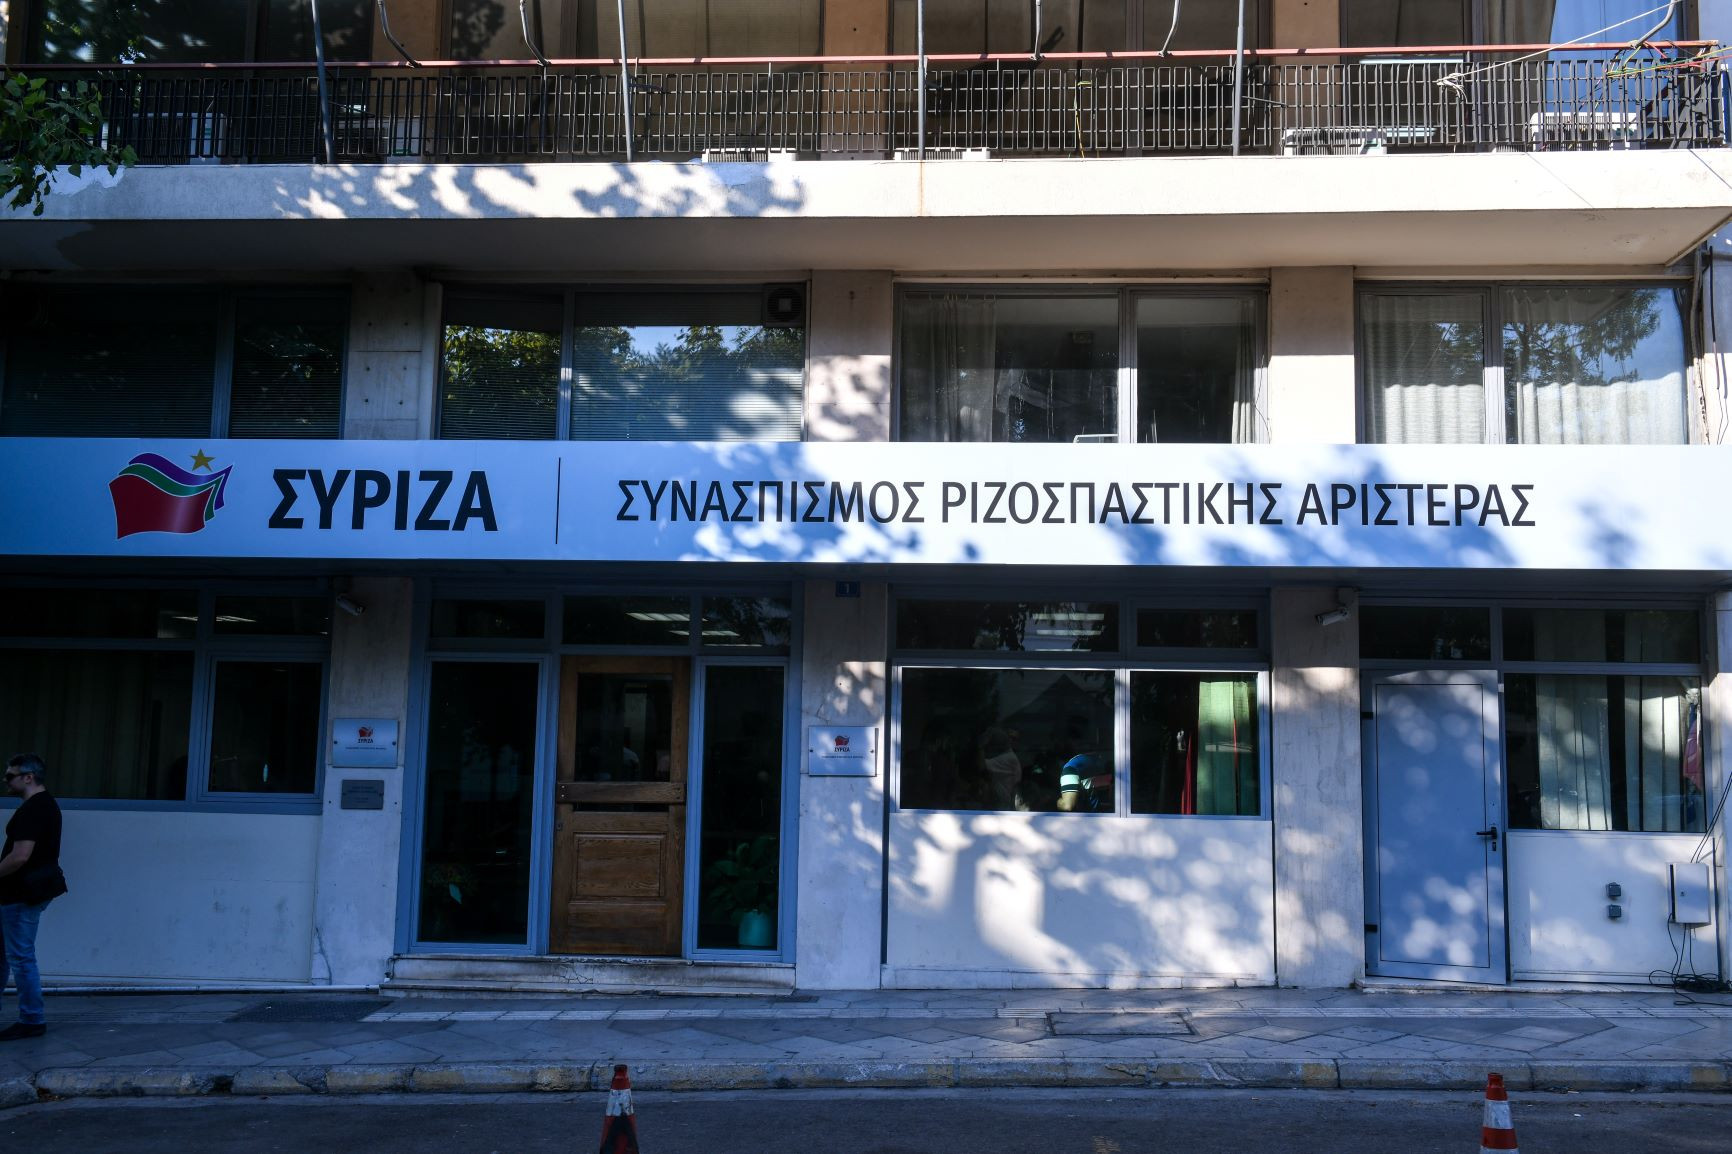 Πηγές ΣΥΡΙΖΑ για υπόθεση Καλογρίτσα: Η ΝΔ είναι σε πανικό για οικονομία και «γαλάζιο» παρακράτος